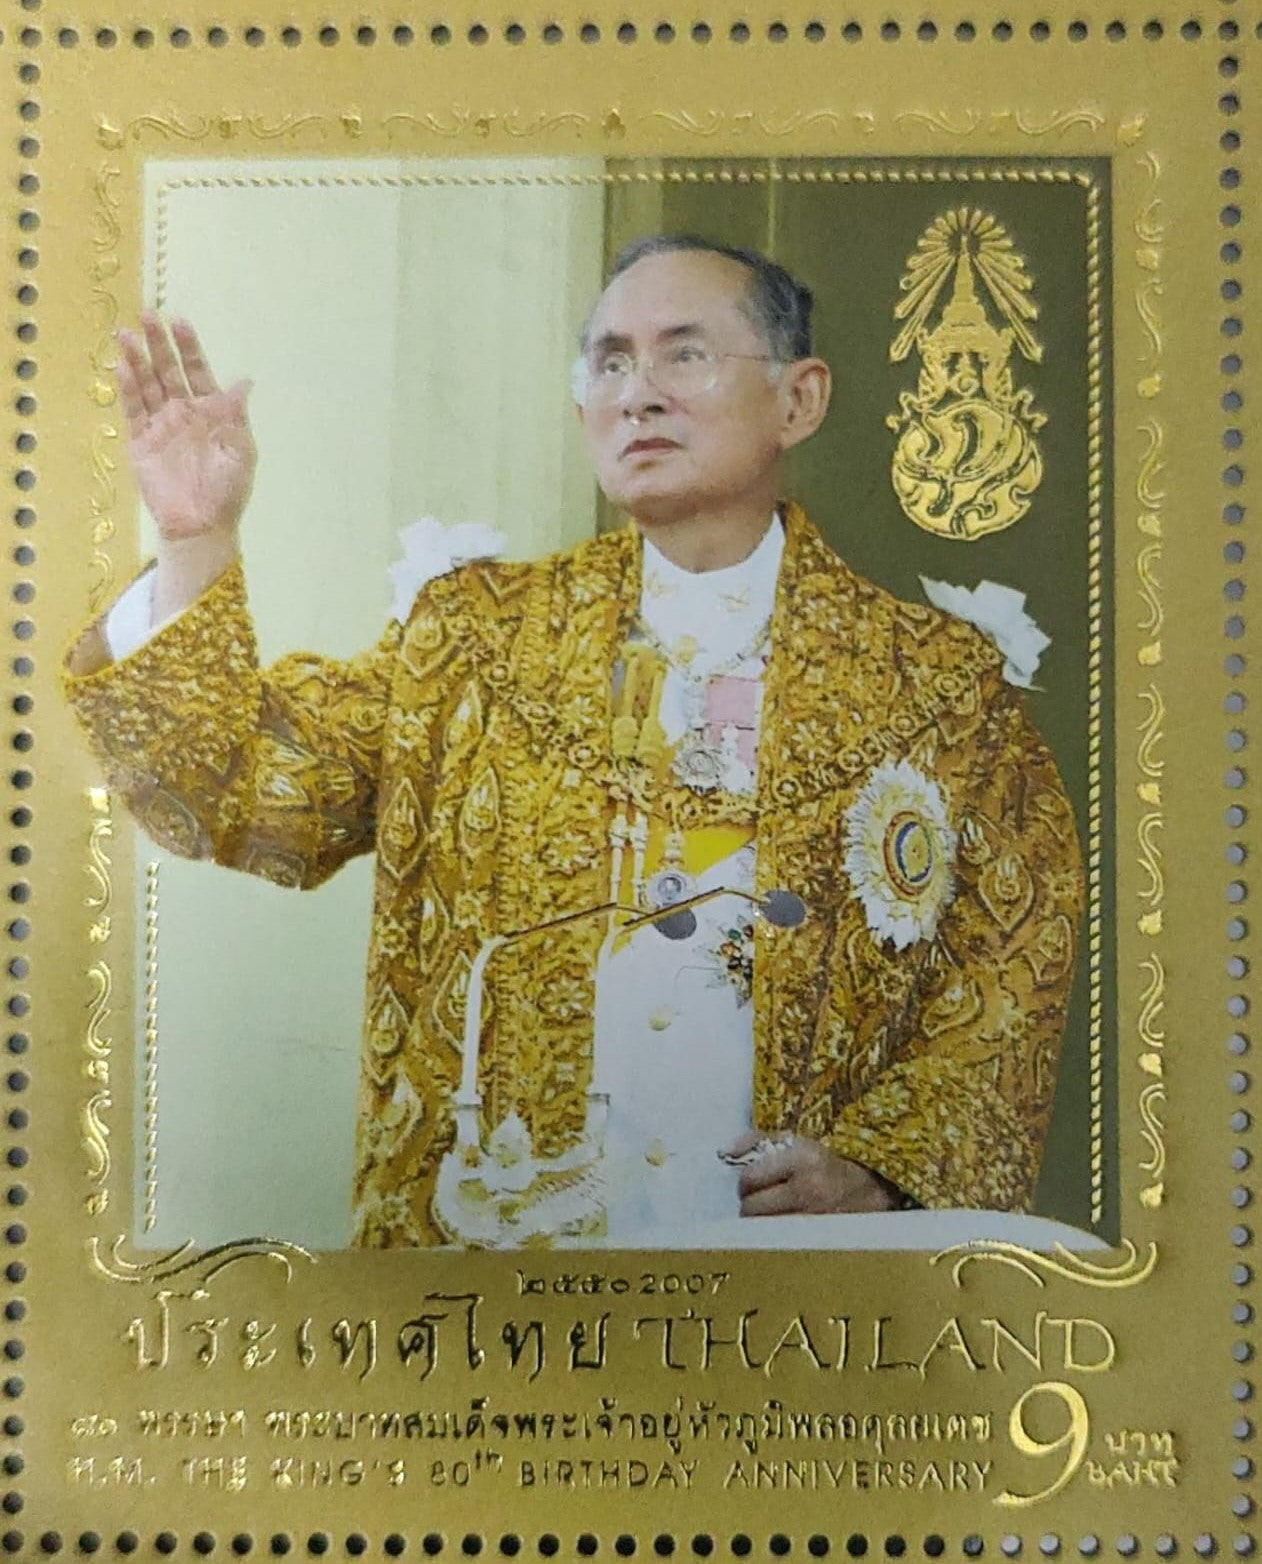 राजा के 80वें जन्मदिन पर थाईलैंड का उच्च उभरा हुआ और सोने की परत वाला टिकट।